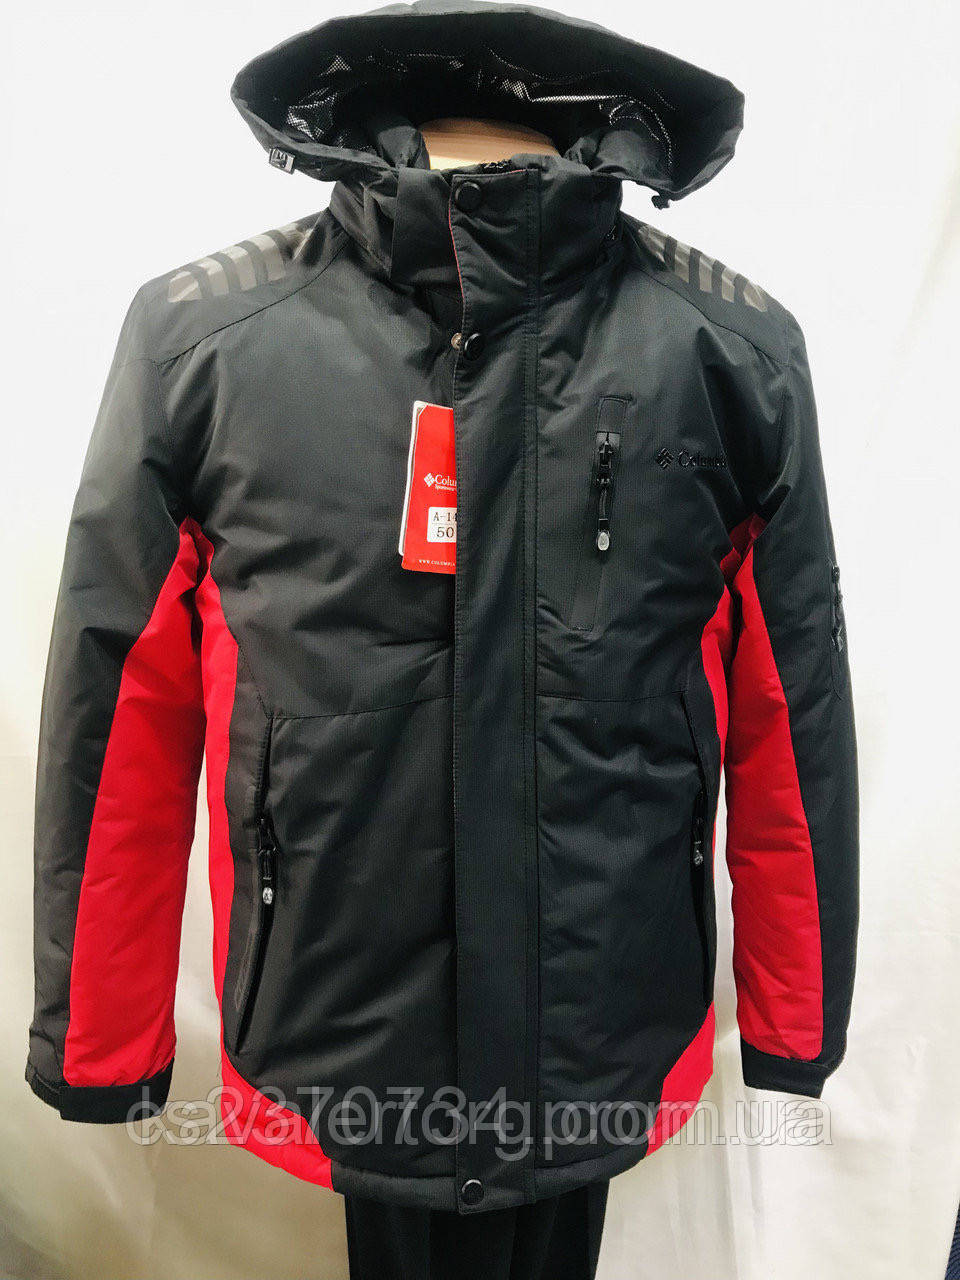 

Куртка мужская зимняя лыжная Columbia(Китай) красная с чёрным термо спорт 48,50,54,56 размеры